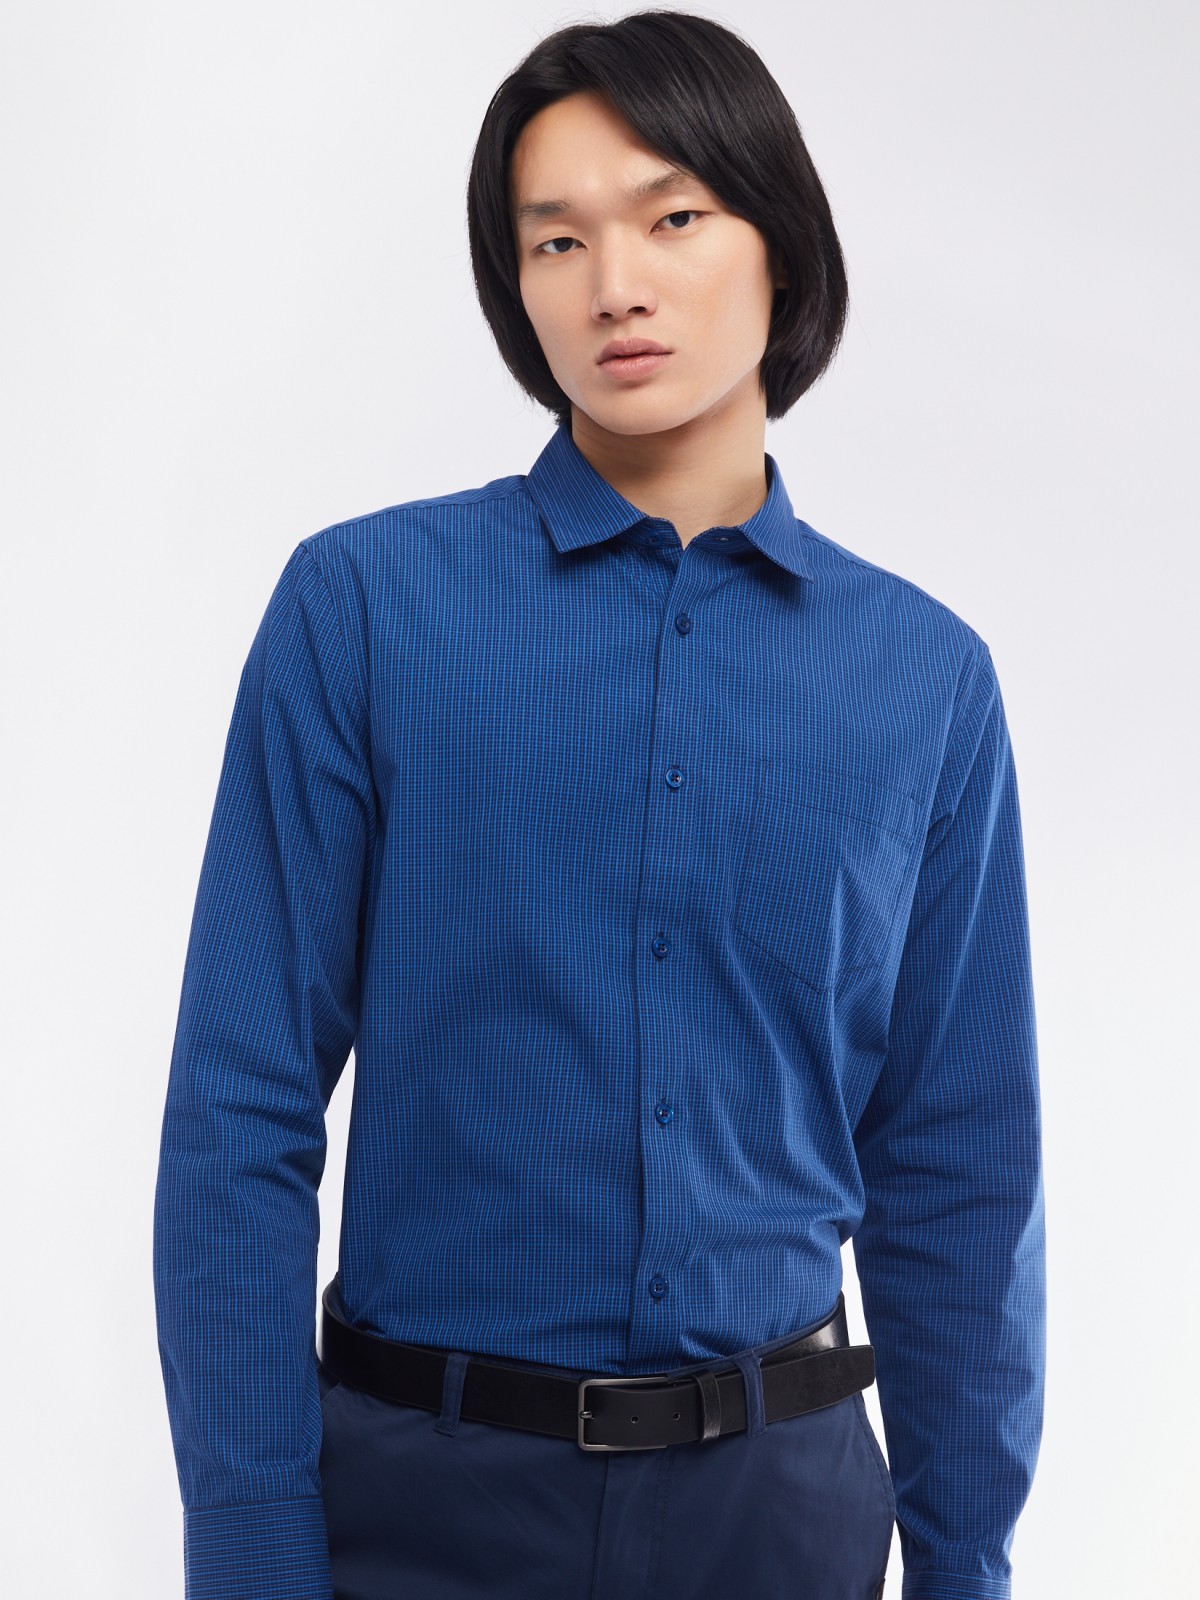 Офисная рубашка прямого силуэта с узором в клетку zolla 014112159062, цвет голубой, размер M